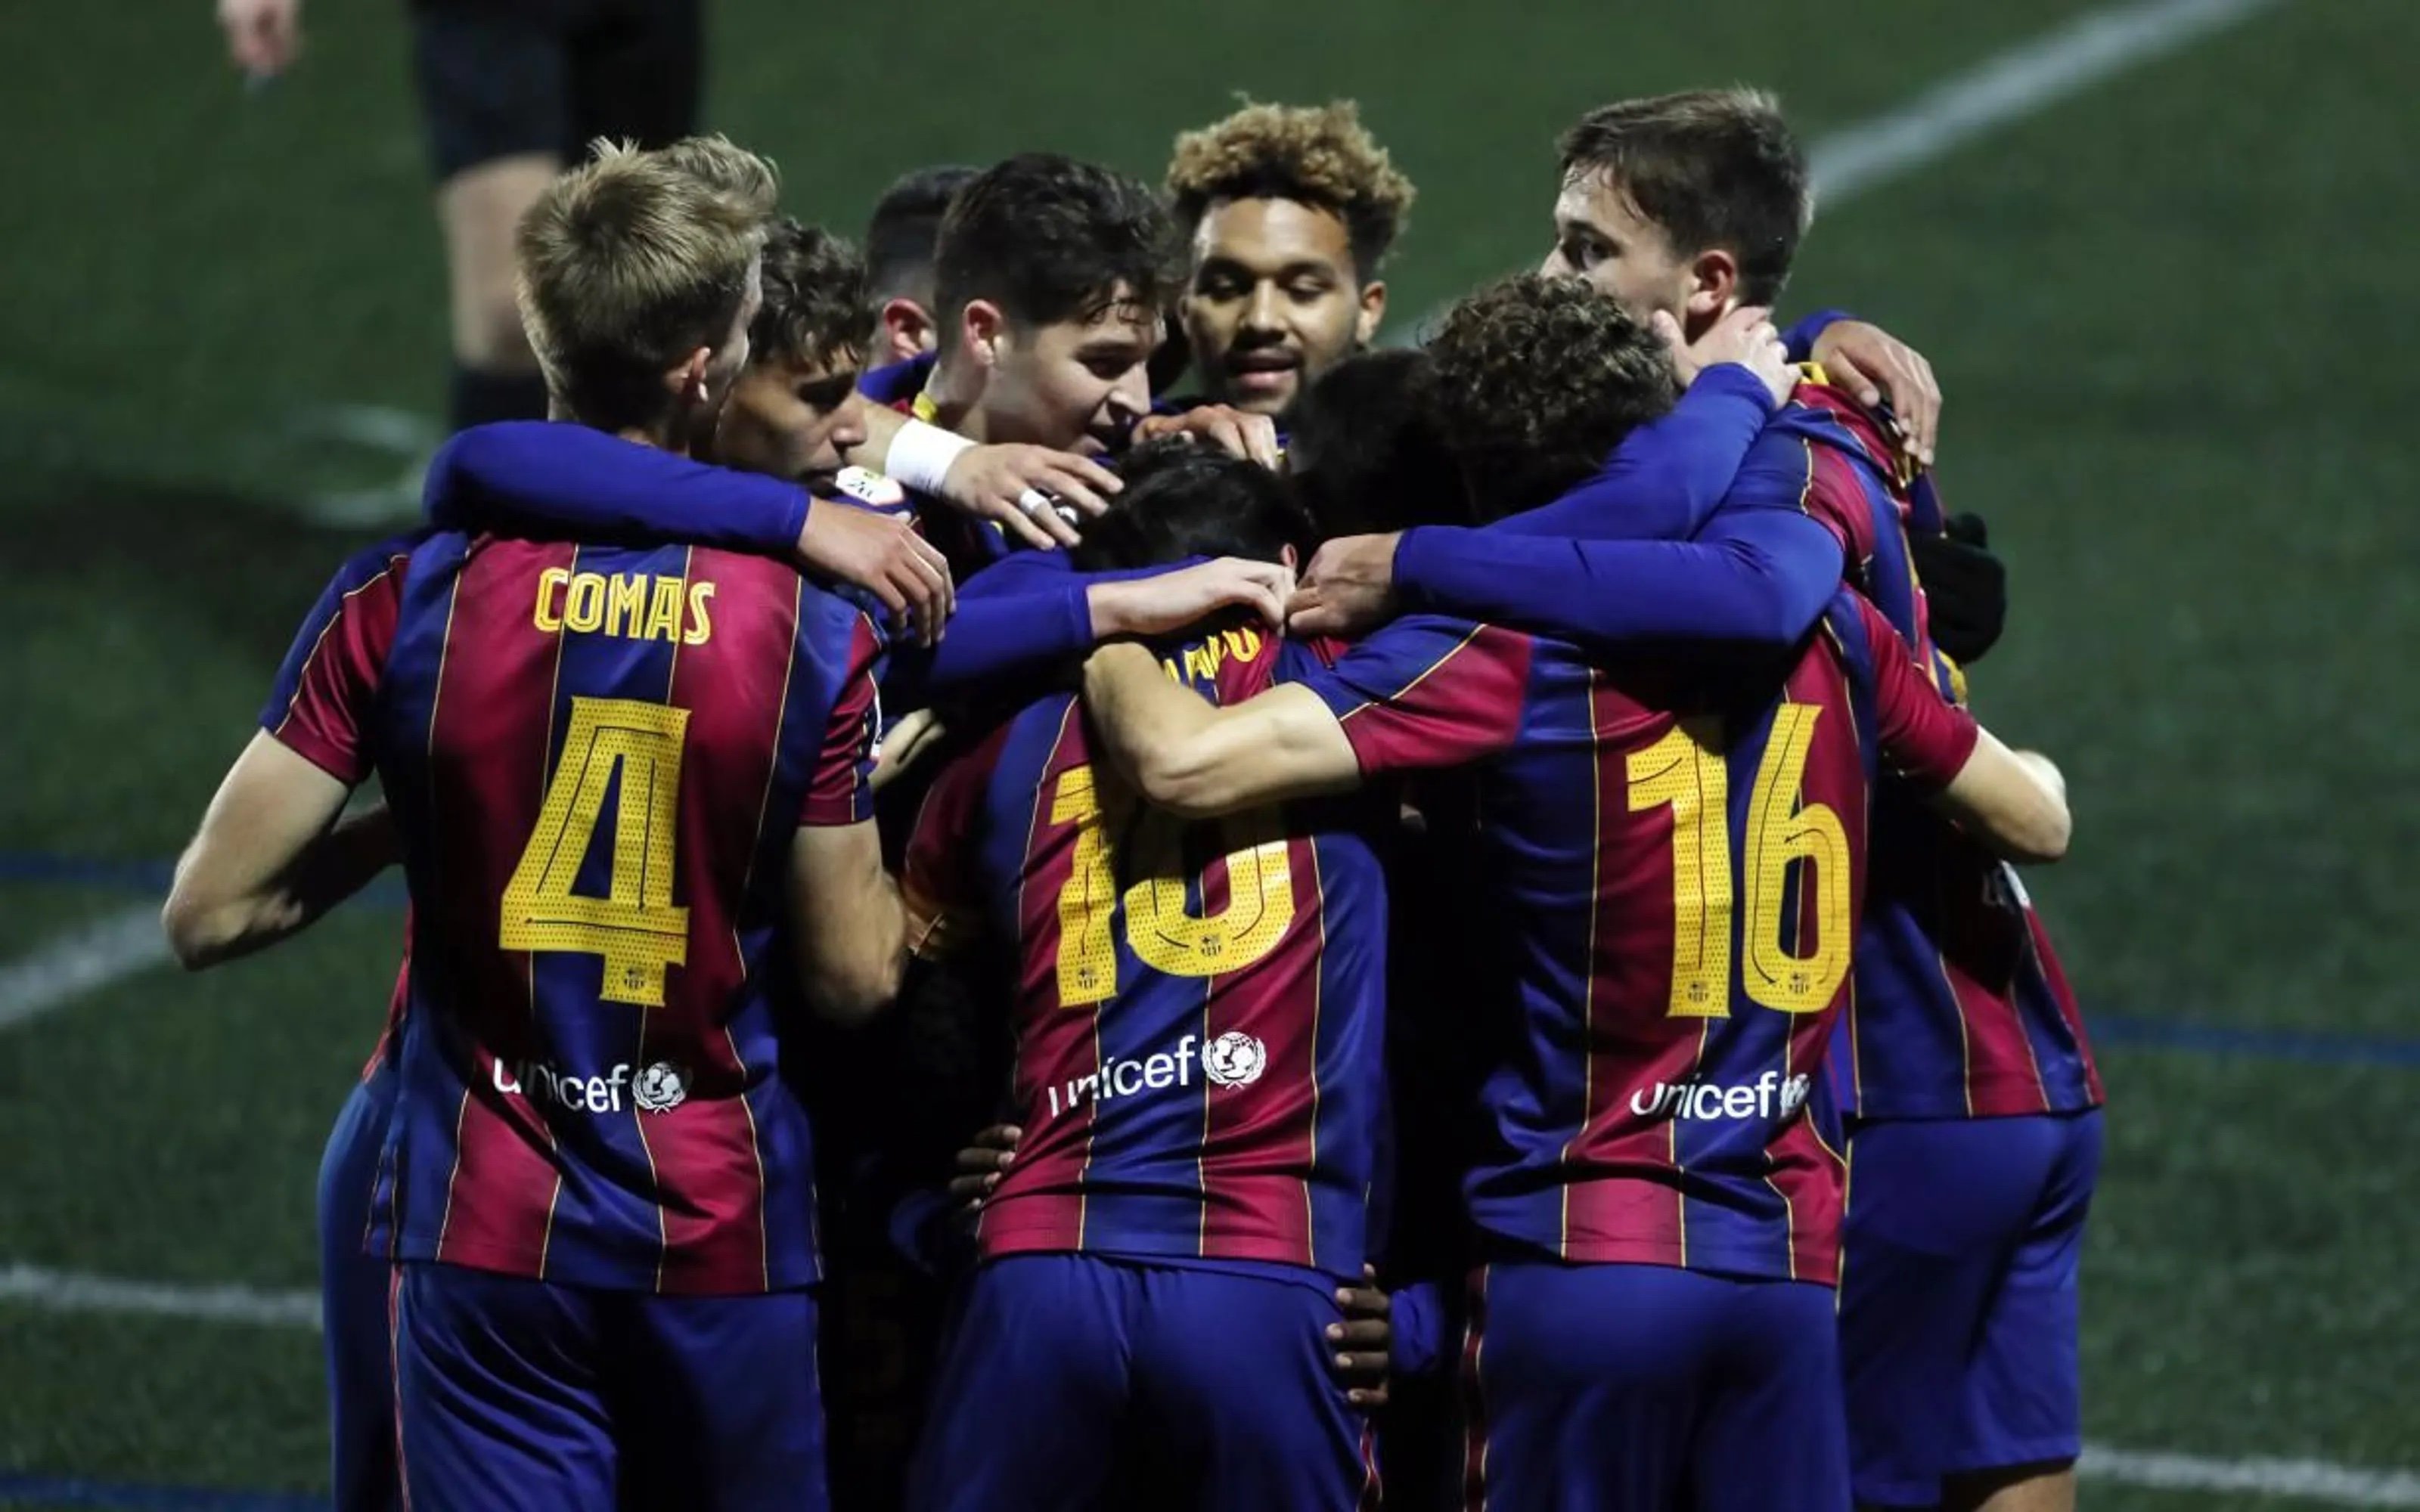 El Barça, el Lleida i tres clubs més de Segona B, assenyalats per impagaments